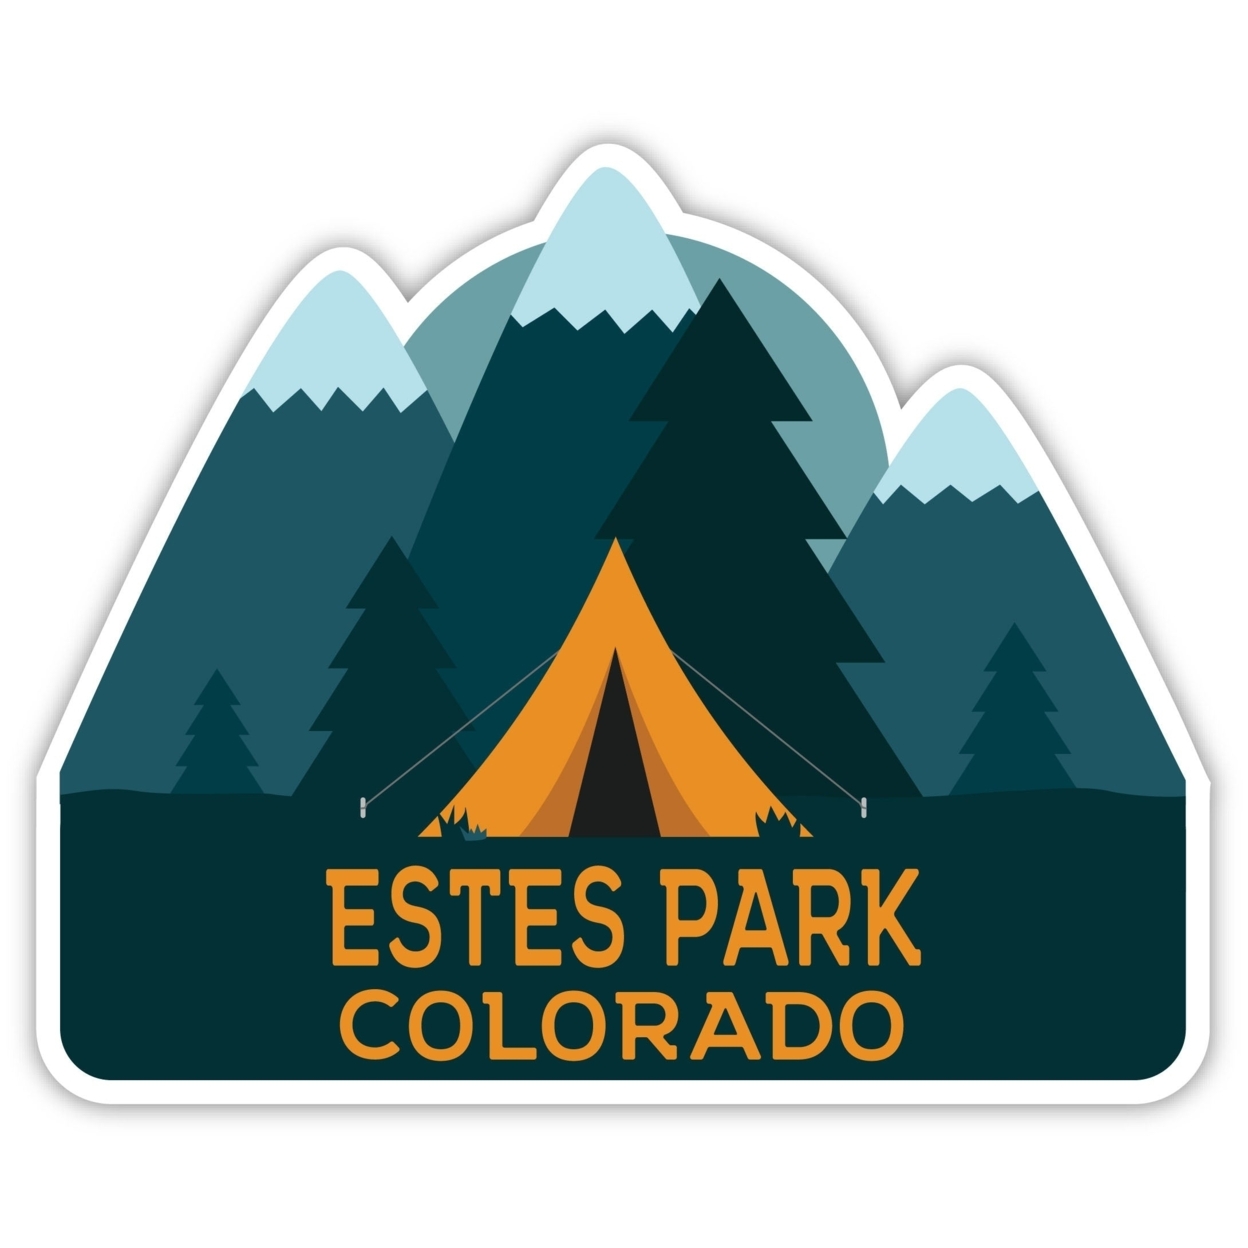 Estes Park Colorado Souvenir Decorative Stickers (Choose Theme And Size) - 4-Pack, 6-Inch, Bear